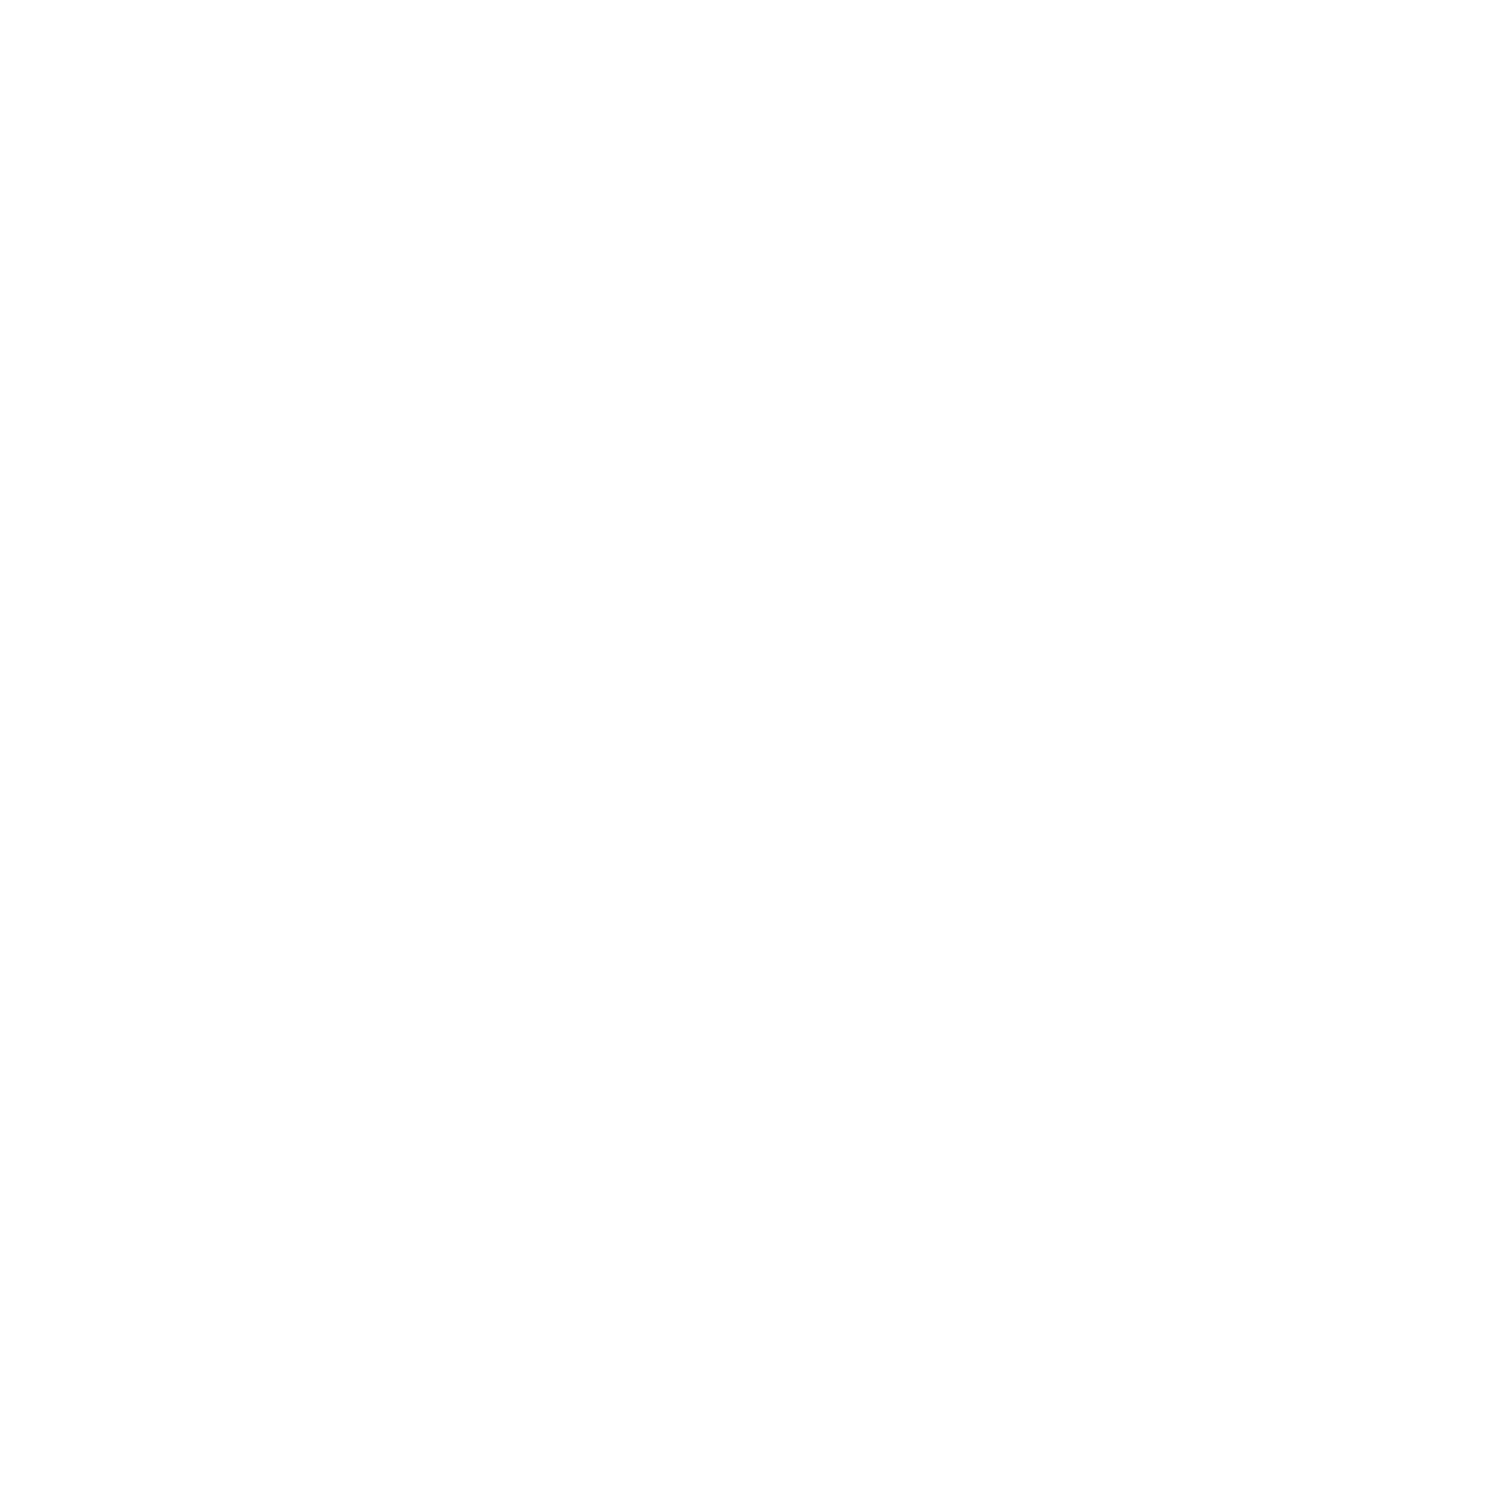 Логотип Voleatech VTAIR (белый)